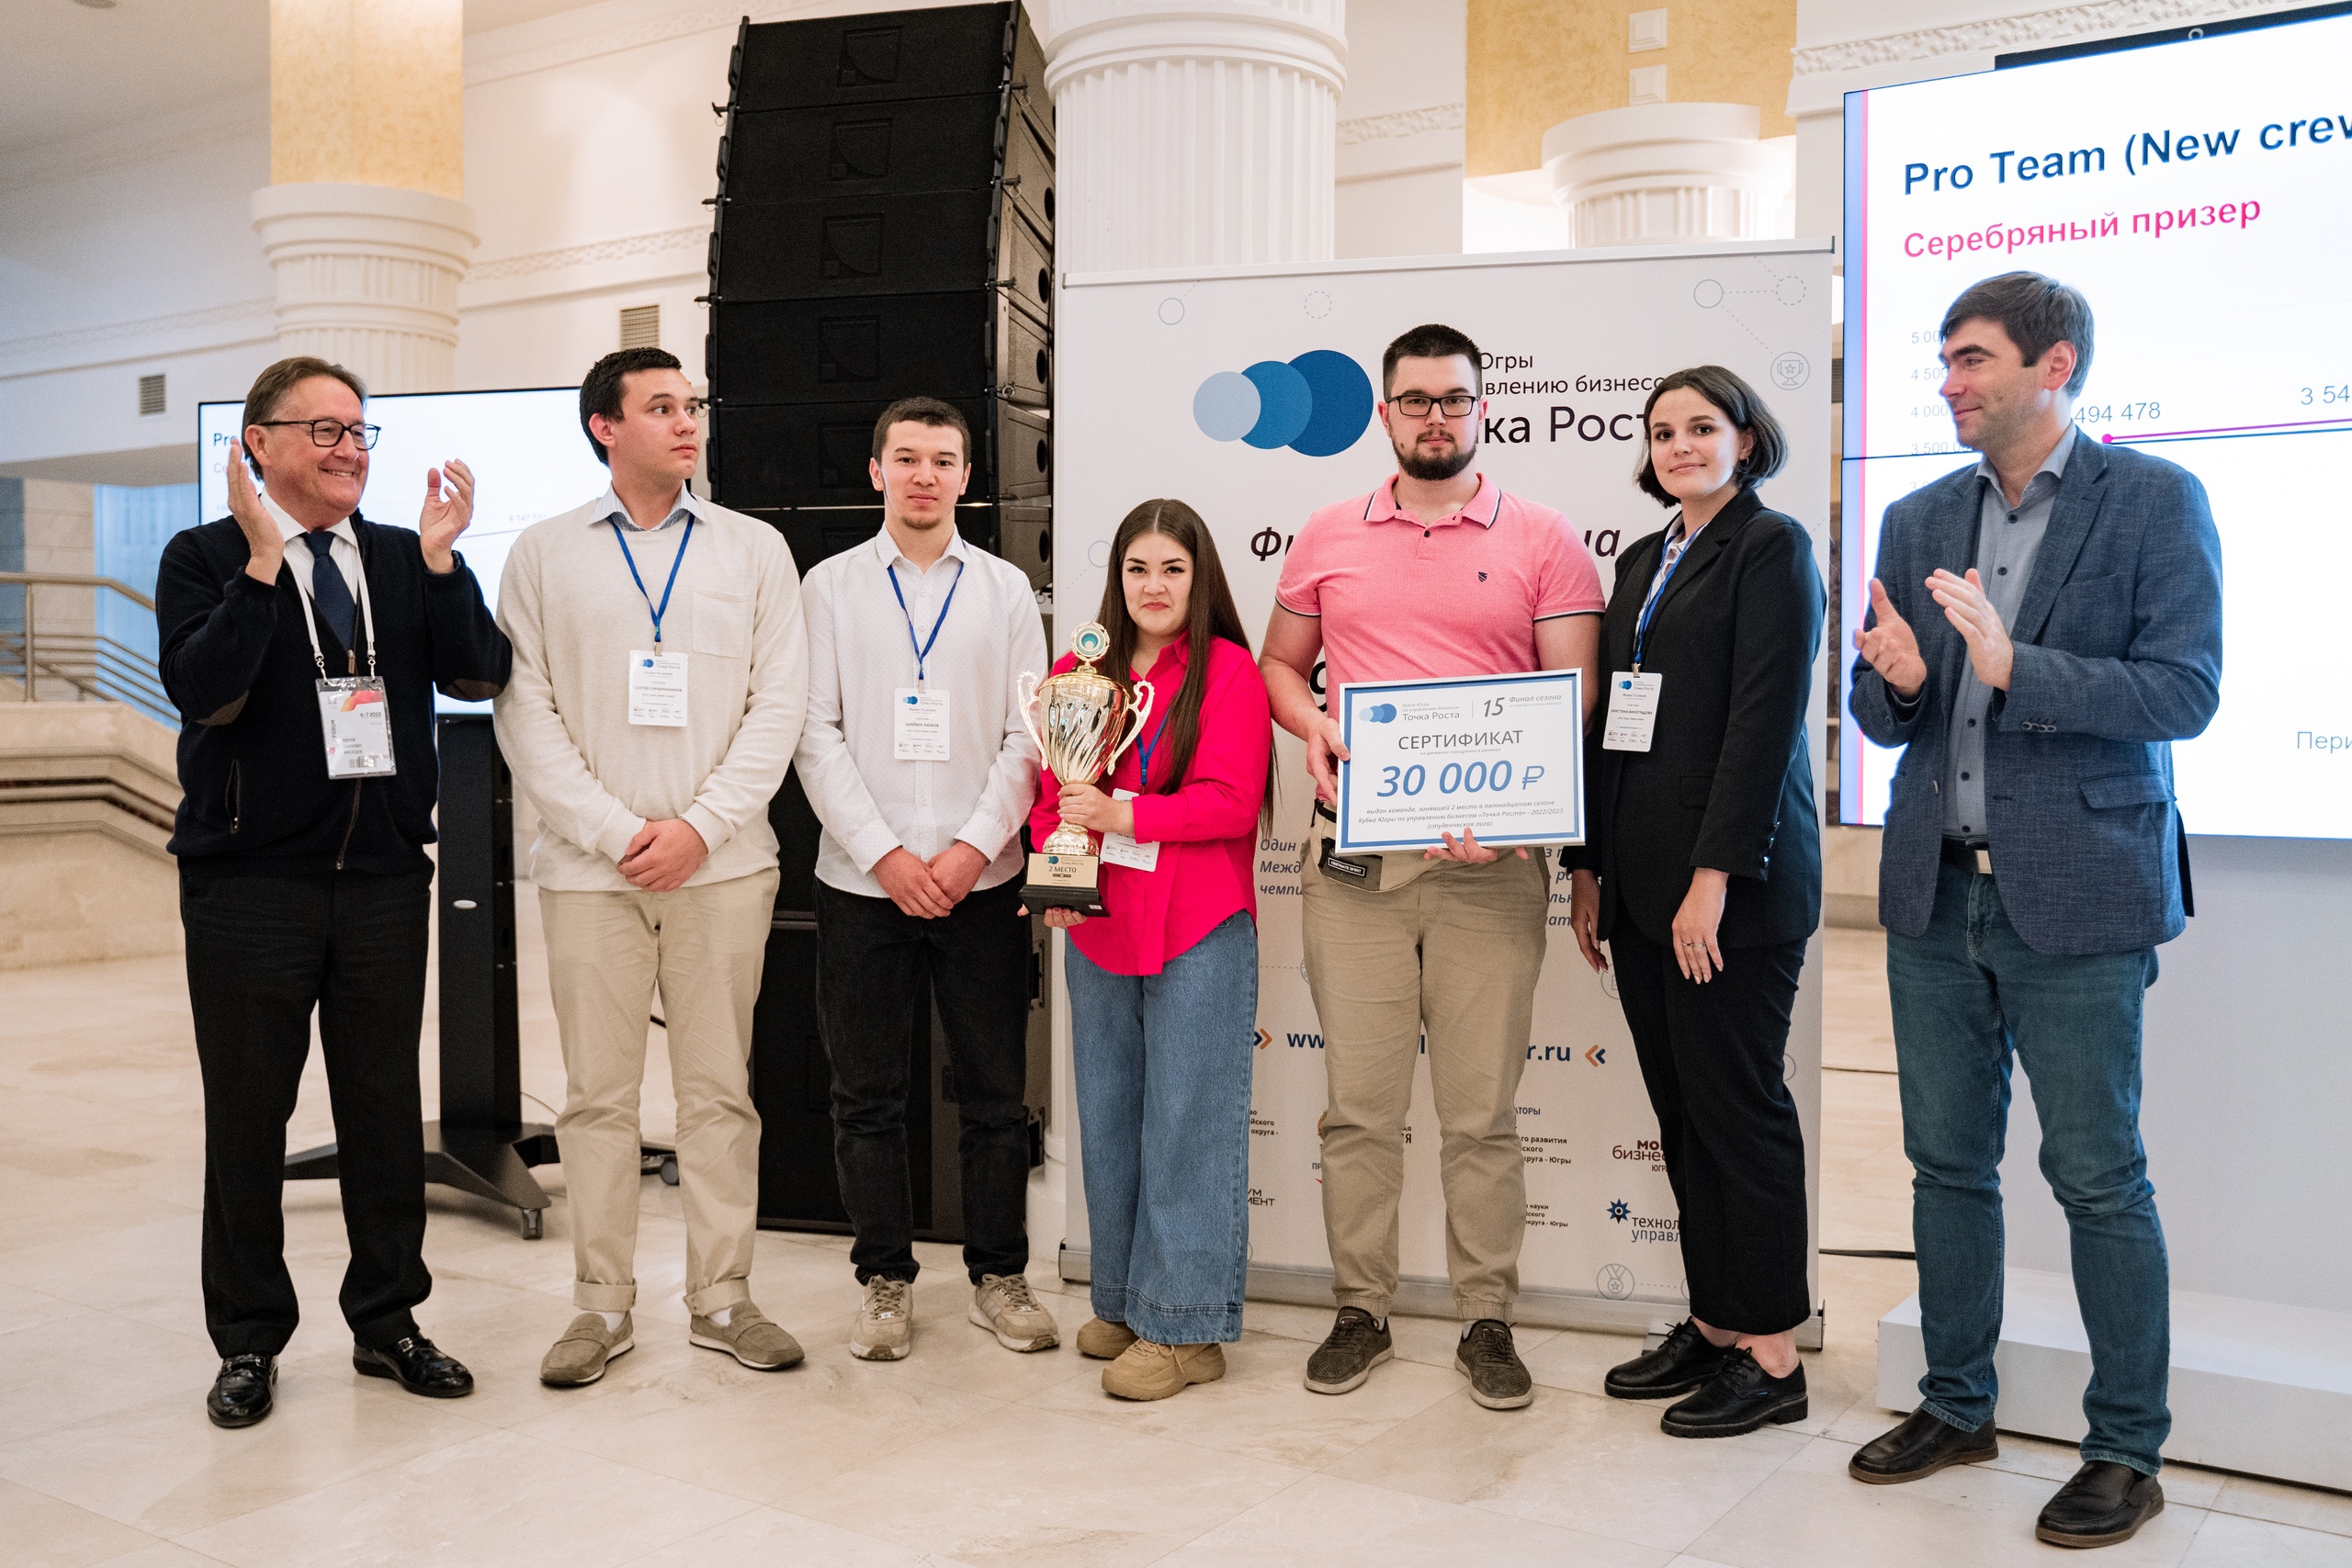 Студенты ЮГУ стали победителями регионального чемпионата «Кубка Югры по управлению бизнесом «Точка Роста»